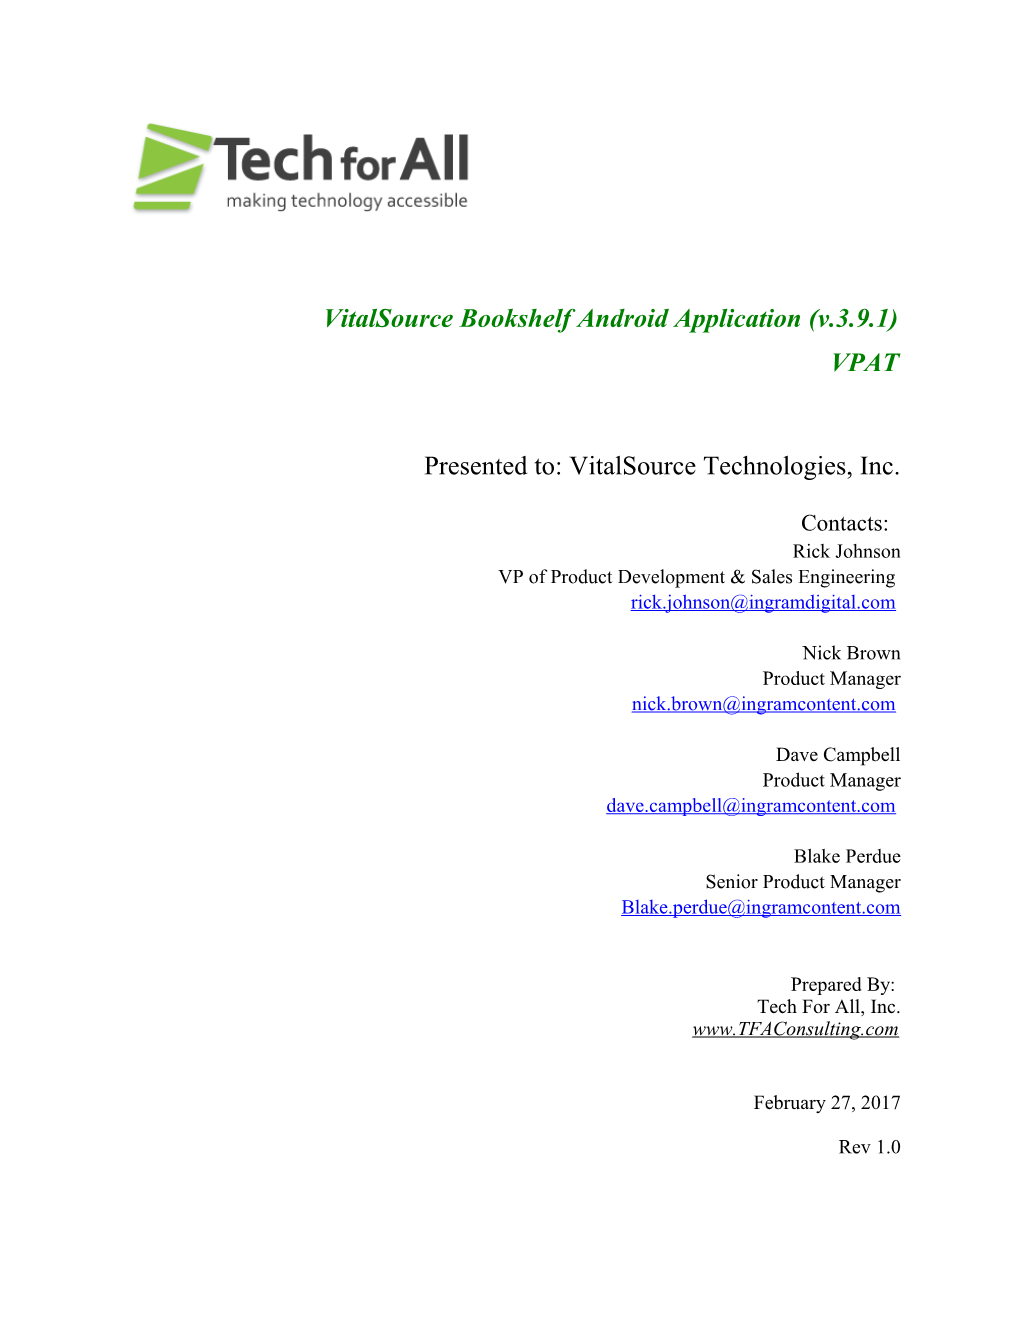 Vitalsource Bookshelf Androidapplication (V.3.9.1)